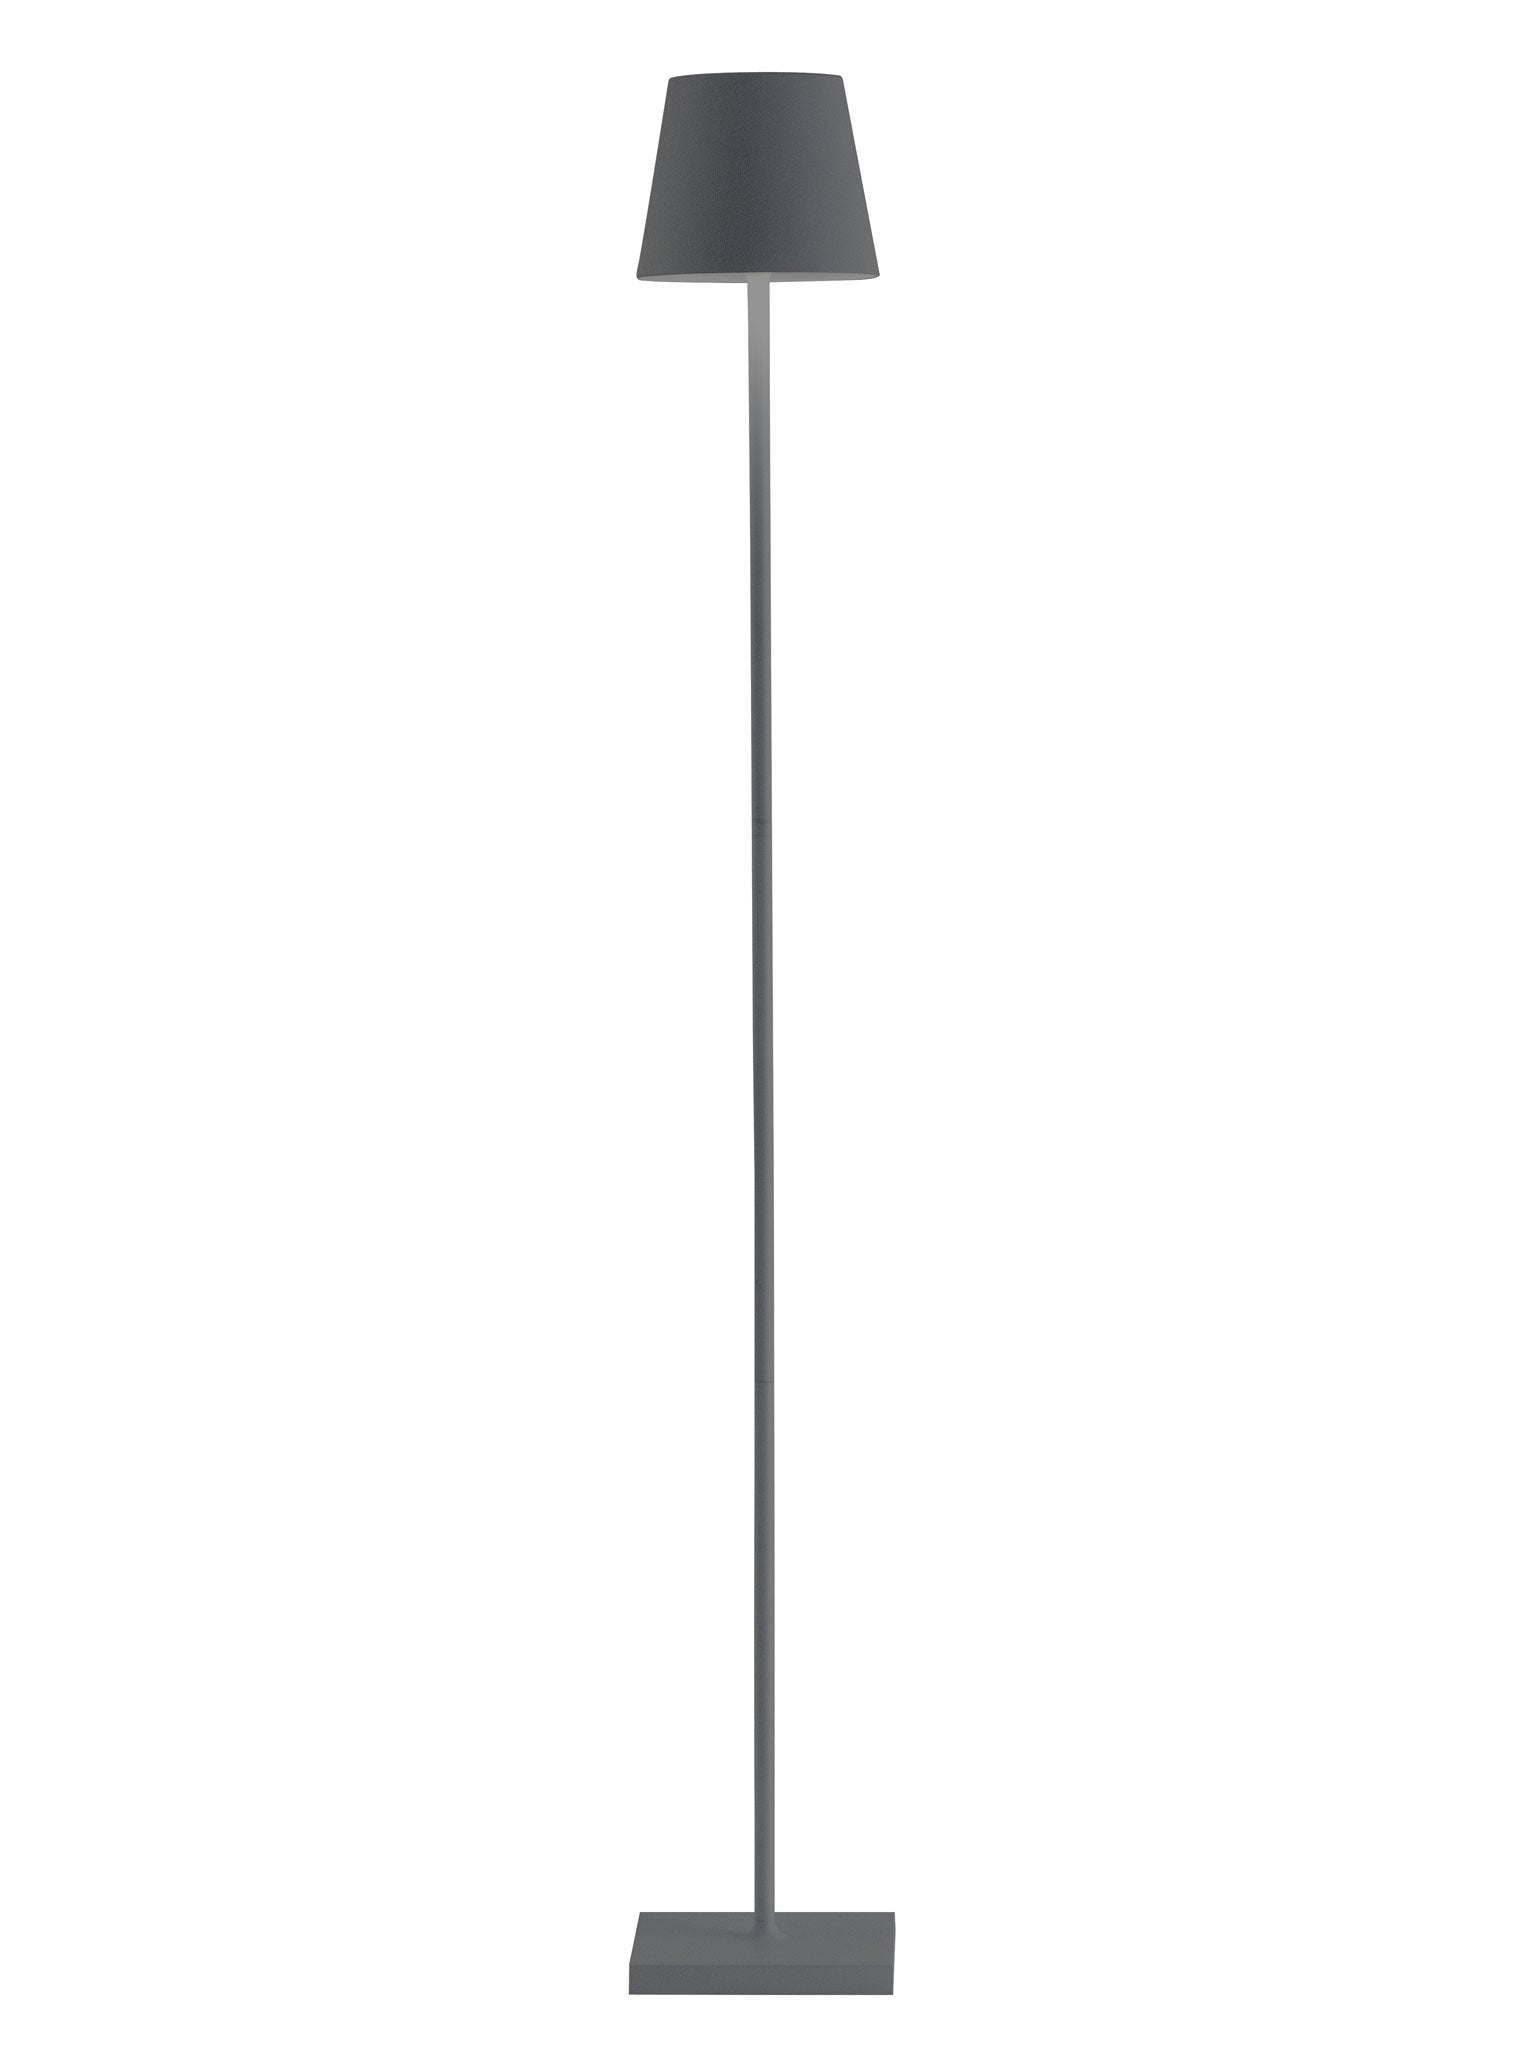 Lampe Ailati Lights Poldina Micro lampe de table sans fil pour 96,43 €  vente en ligne - Achetez-la en ligne au meilleur prix! - LampCommerce